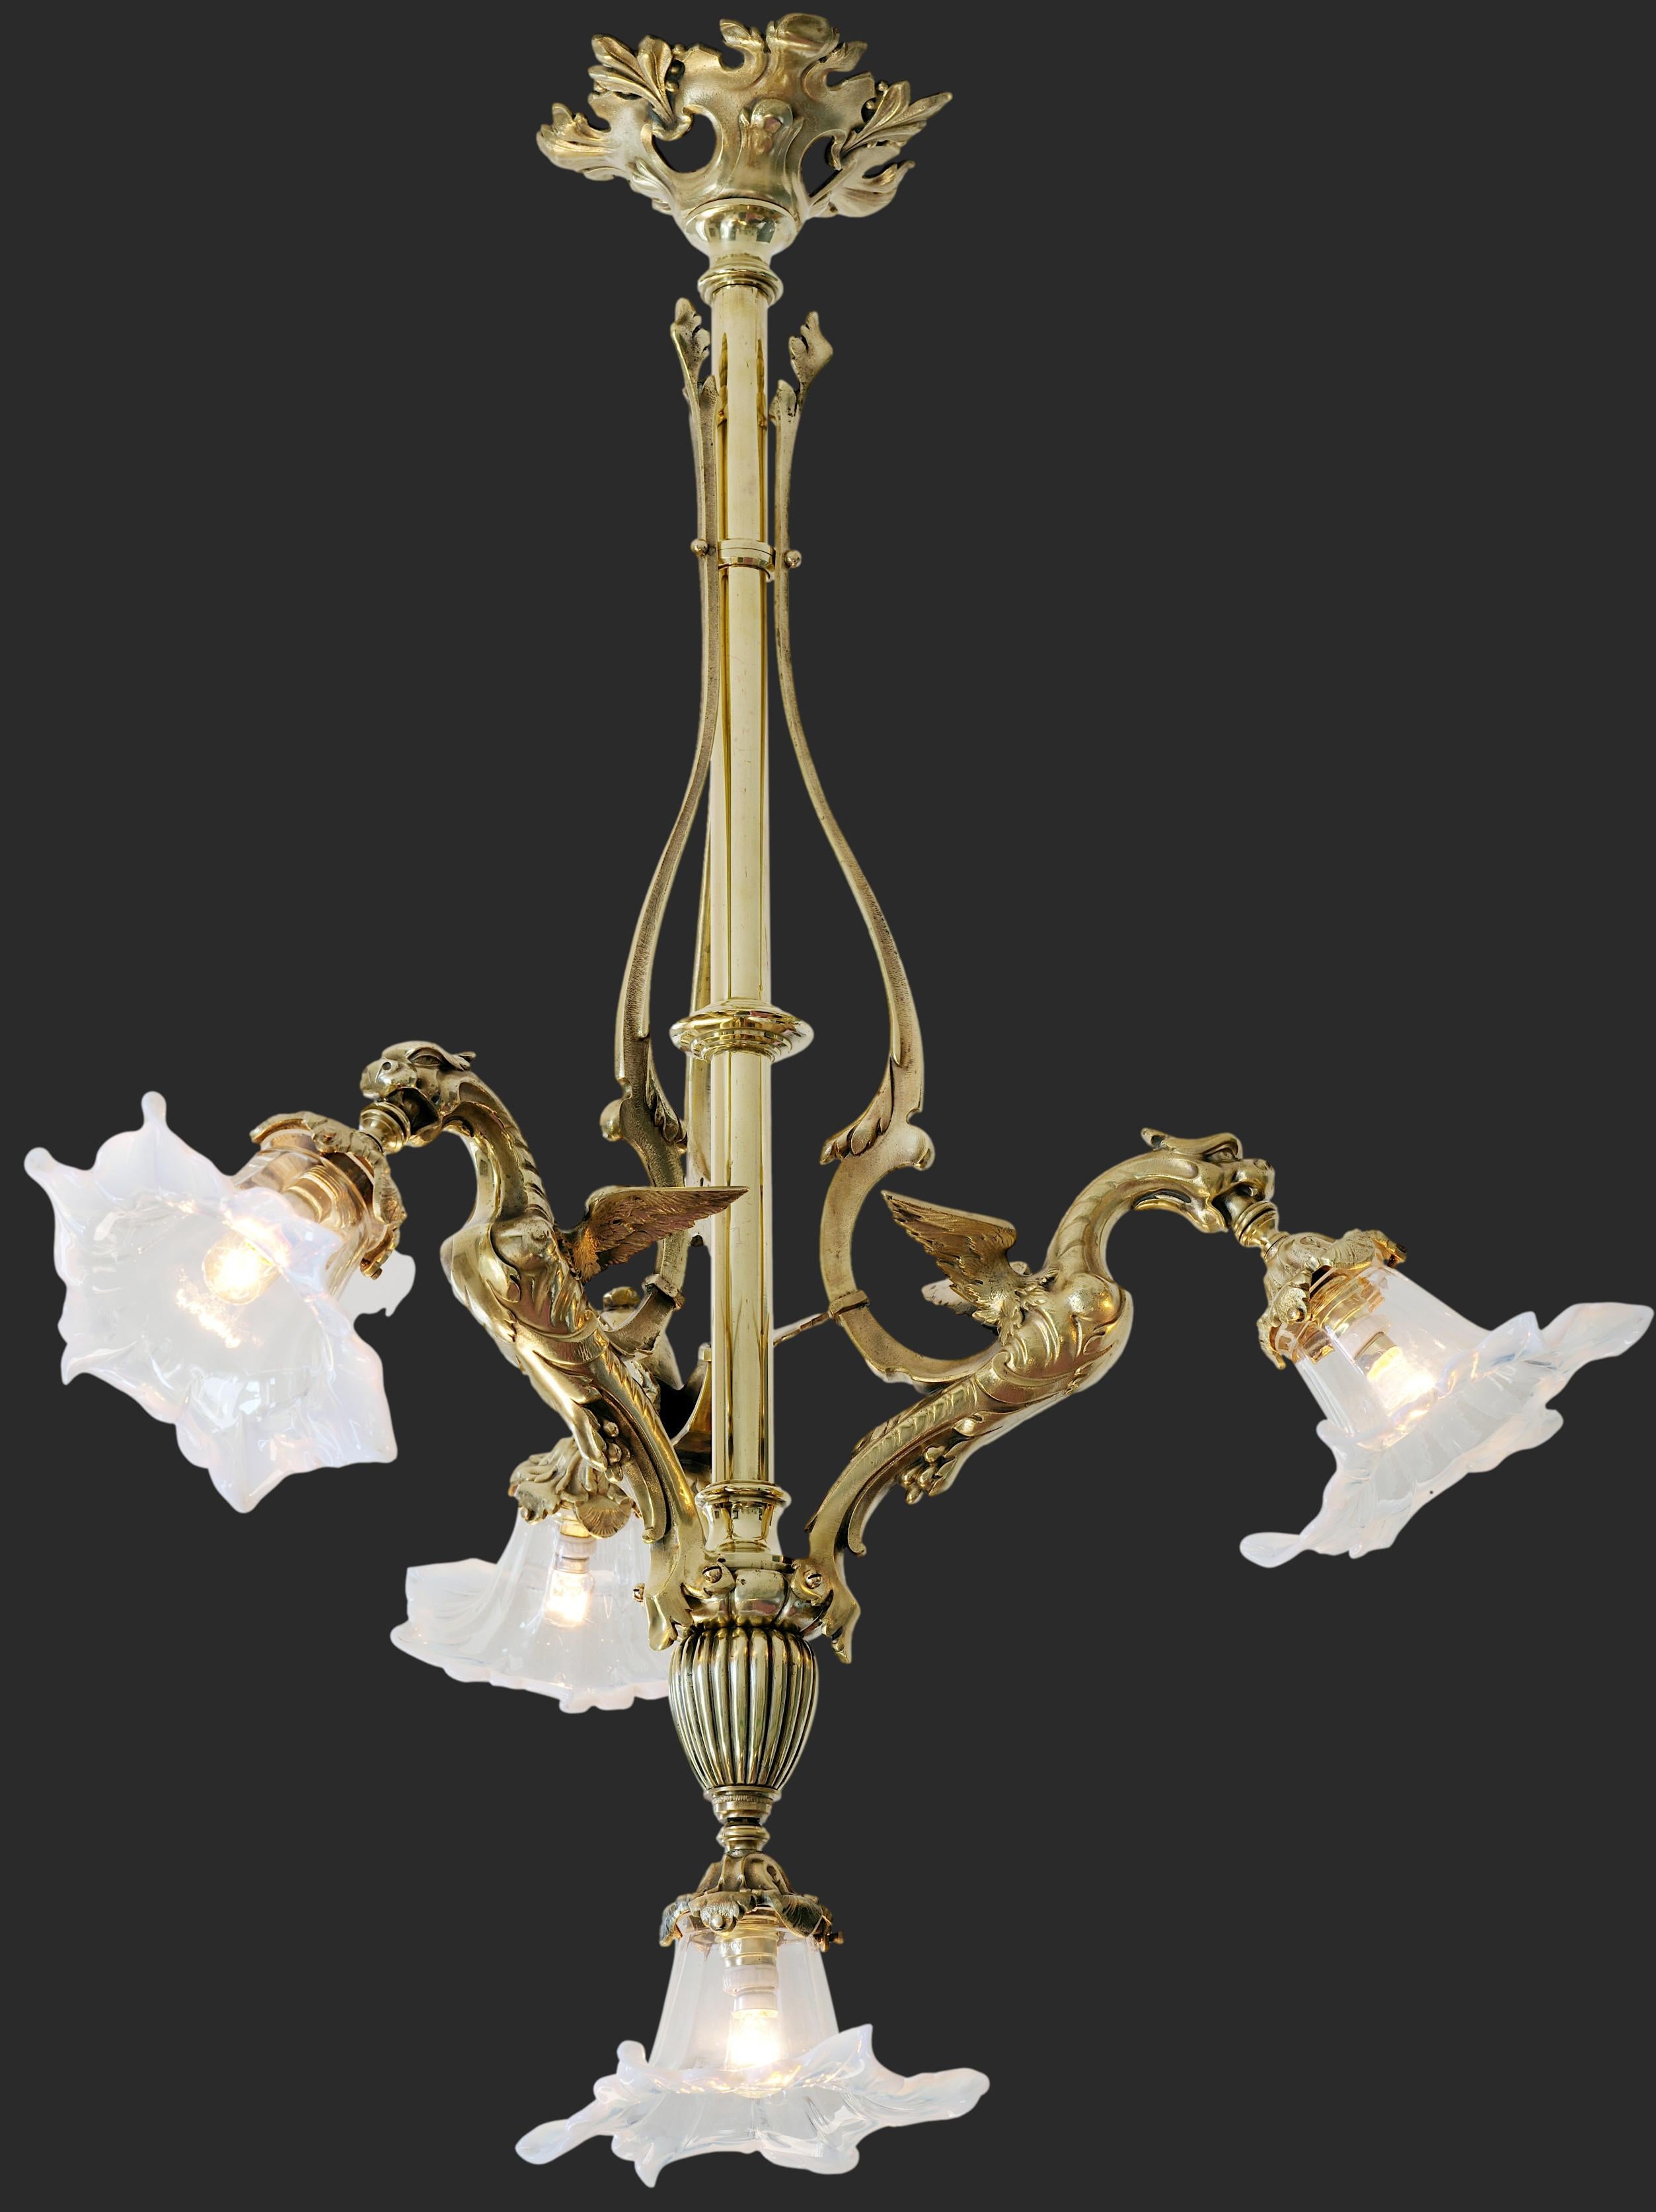 Französischer Kronleuchter aus Bronze, Ende 19. Jahrhundert, Frankreich, 1880-1890. Drachen. Leuchte aus massiver Bronze mit 3 Drachen. 3 sehr wertvolle Lampenschirme aus mundgeblasenem, dünnem Halbkristall, die mit einer Klemme gespannt sind. Die